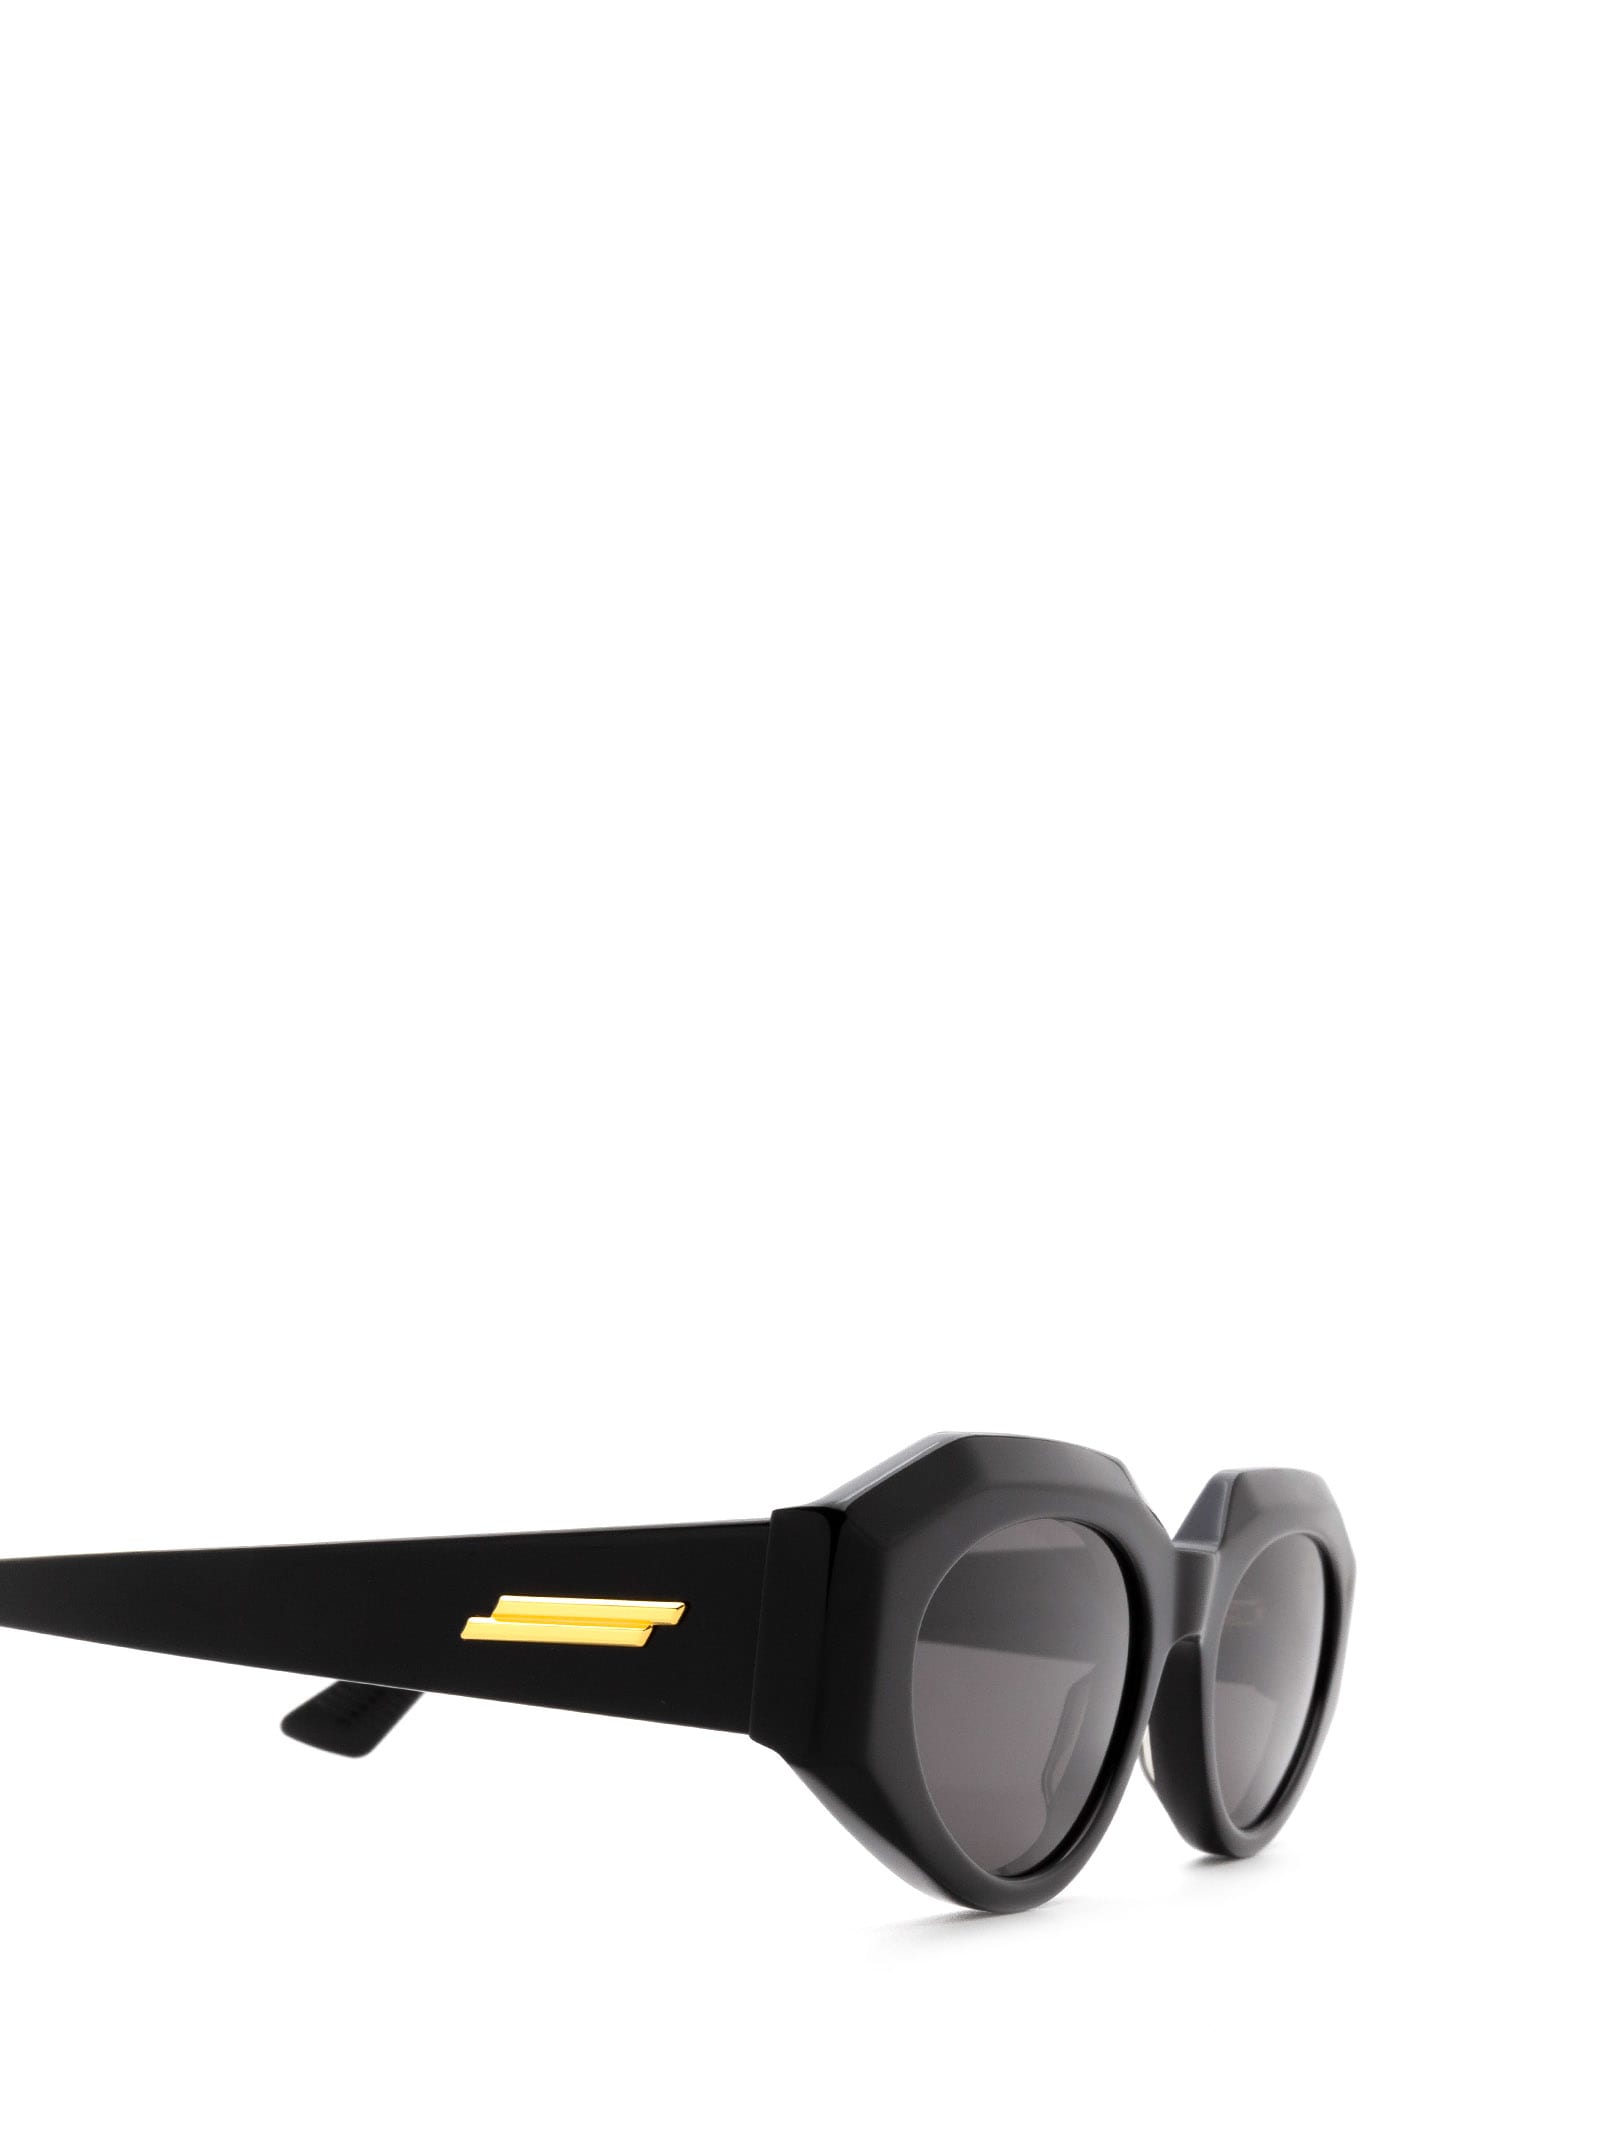 Shop Bottega Veneta Bv1031s Black Sunglasses